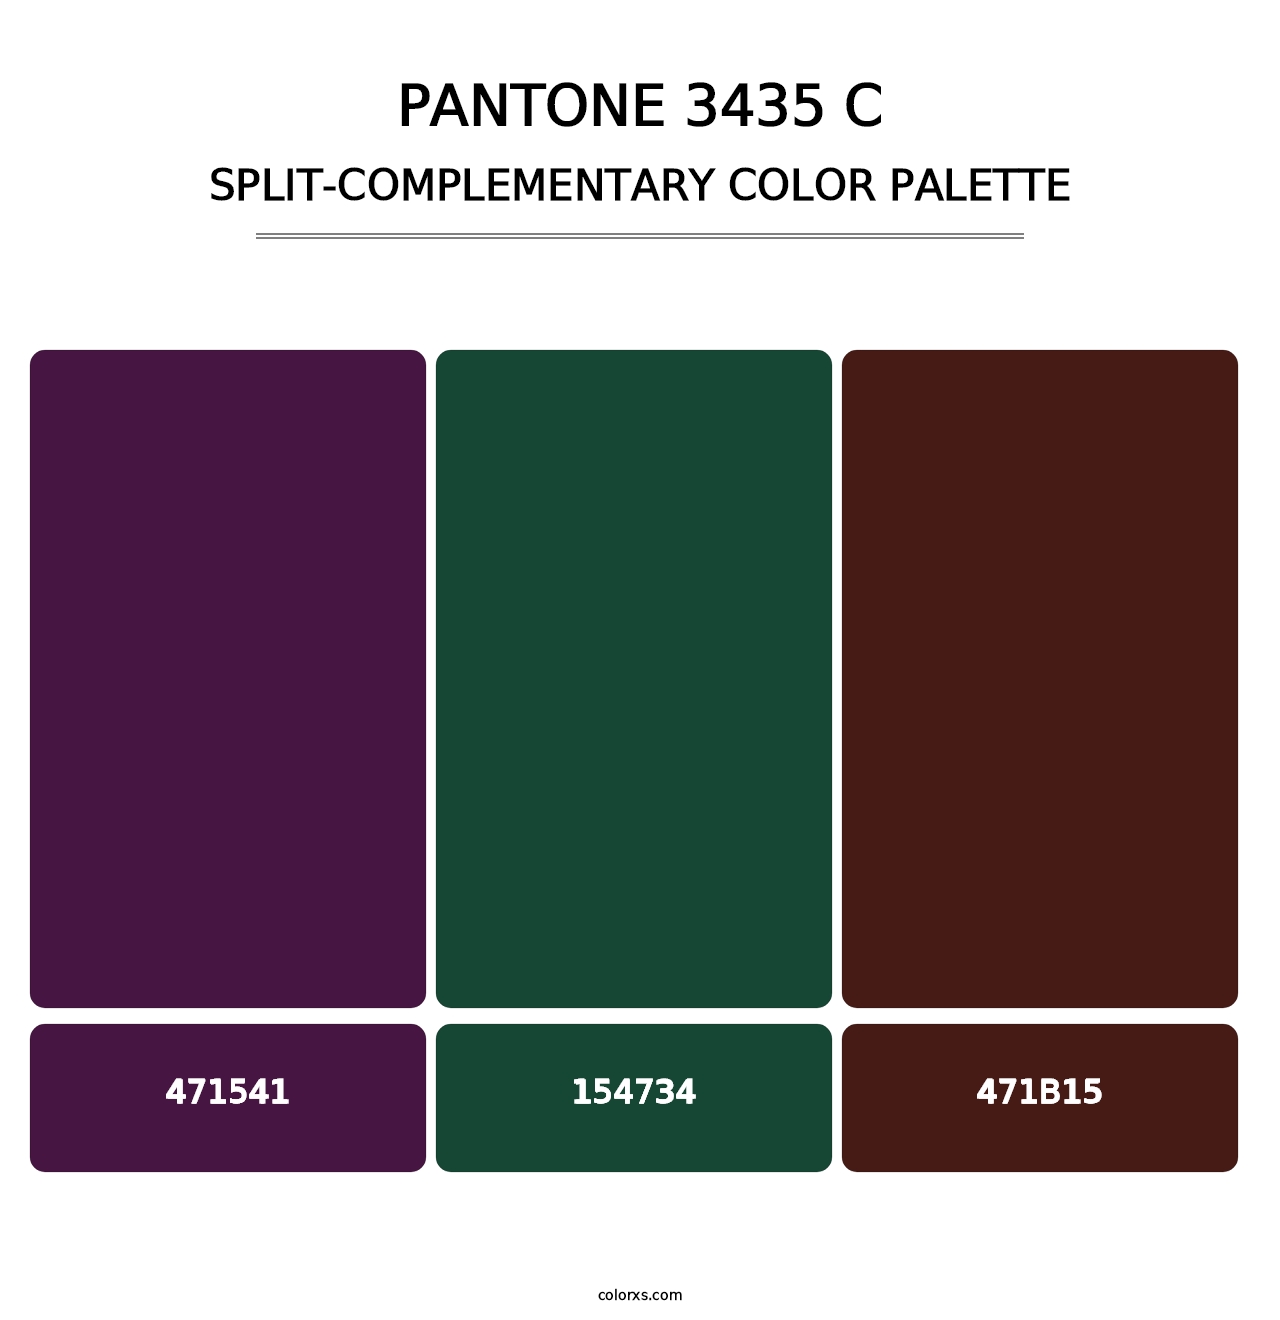 PANTONE 3435 C - Split-Complementary Color Palette